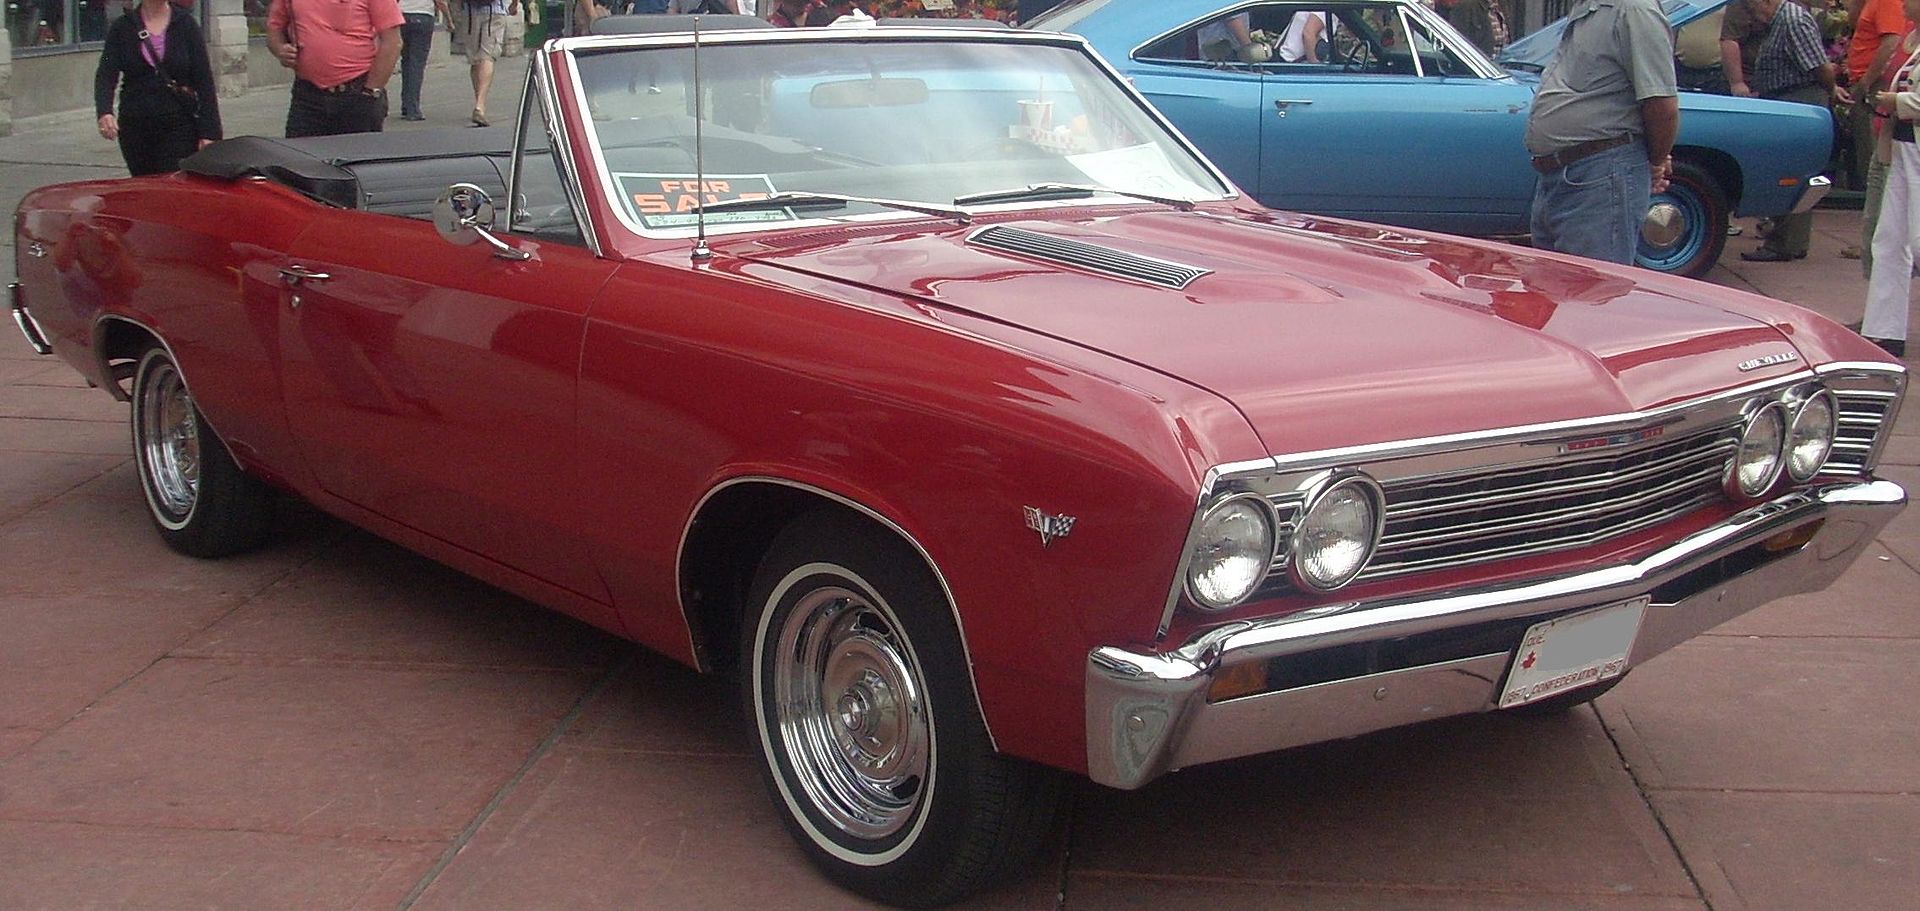 Одна из самых популярных машин 60-70 годов в США.